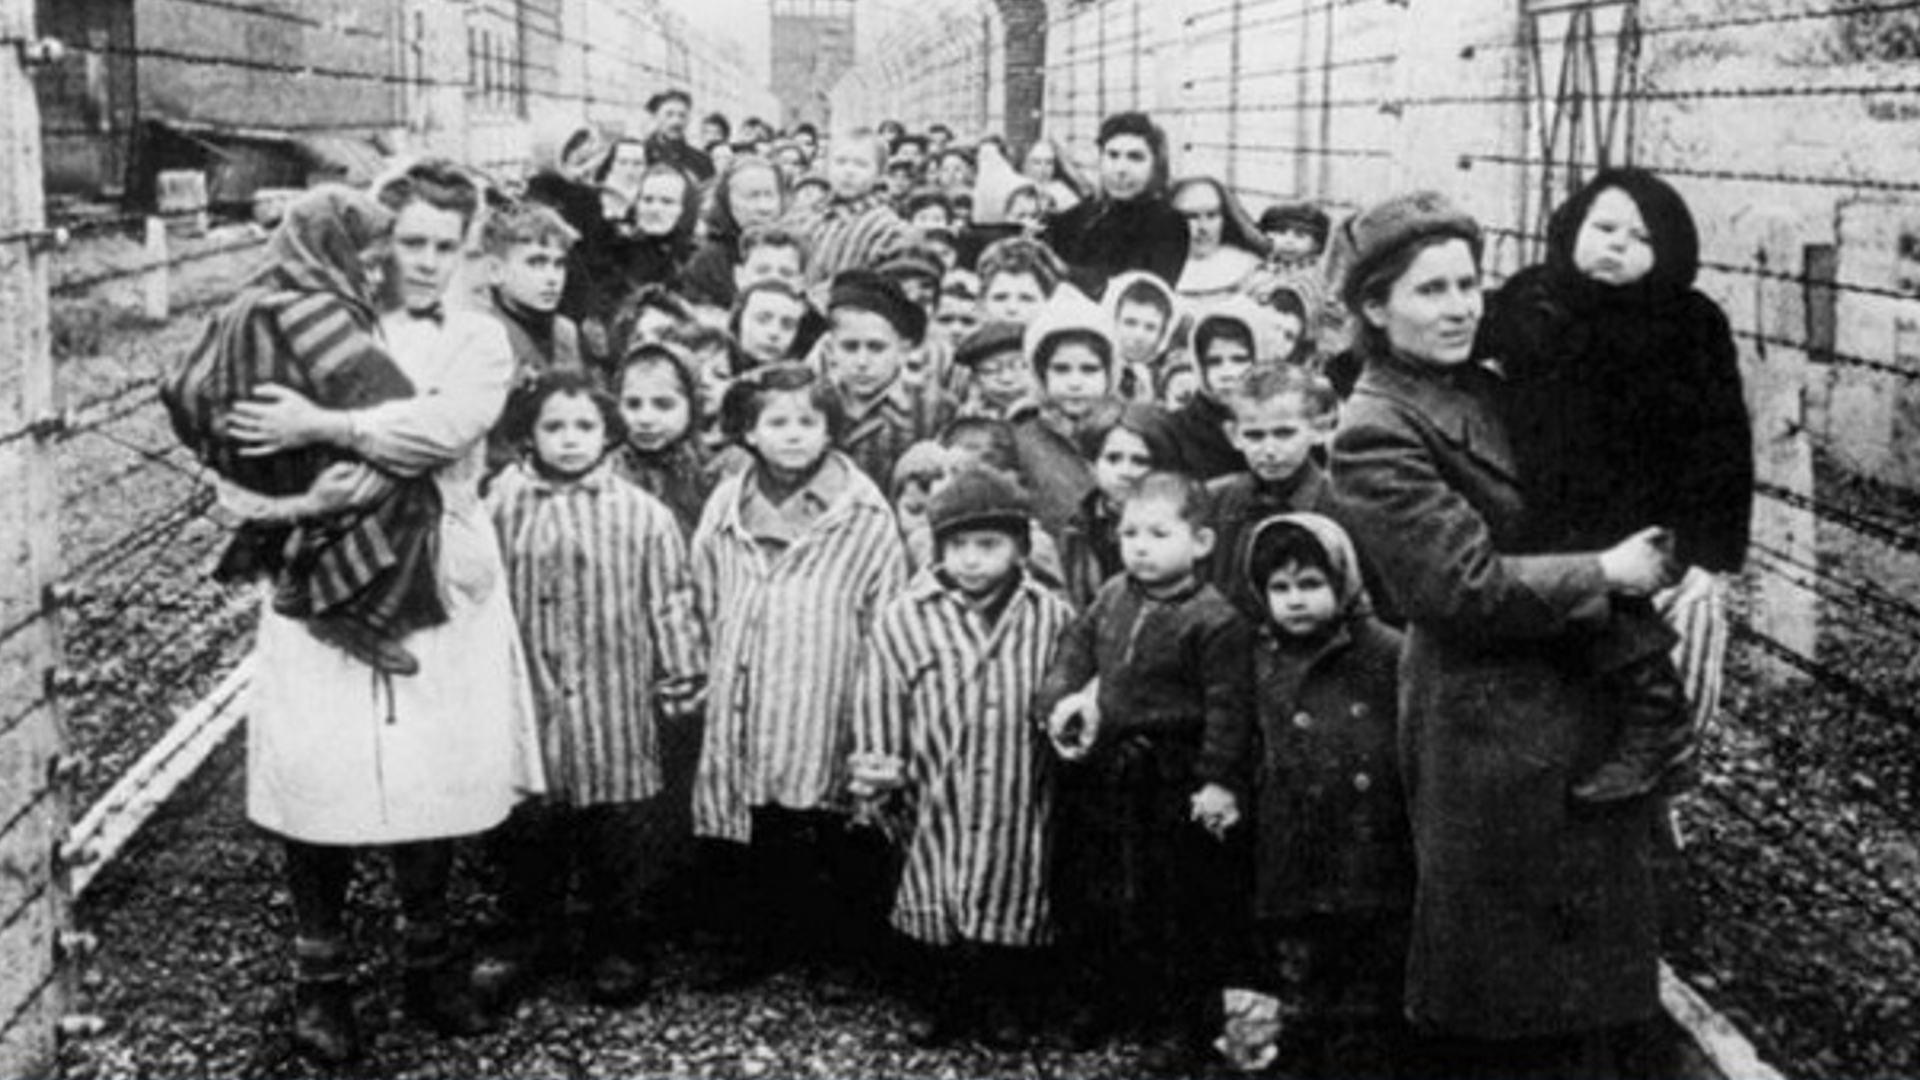 Un millón y medio de vidas incipientes truncadas por la barbarie: Recuerdan a víctimas infantiles del Holocausto